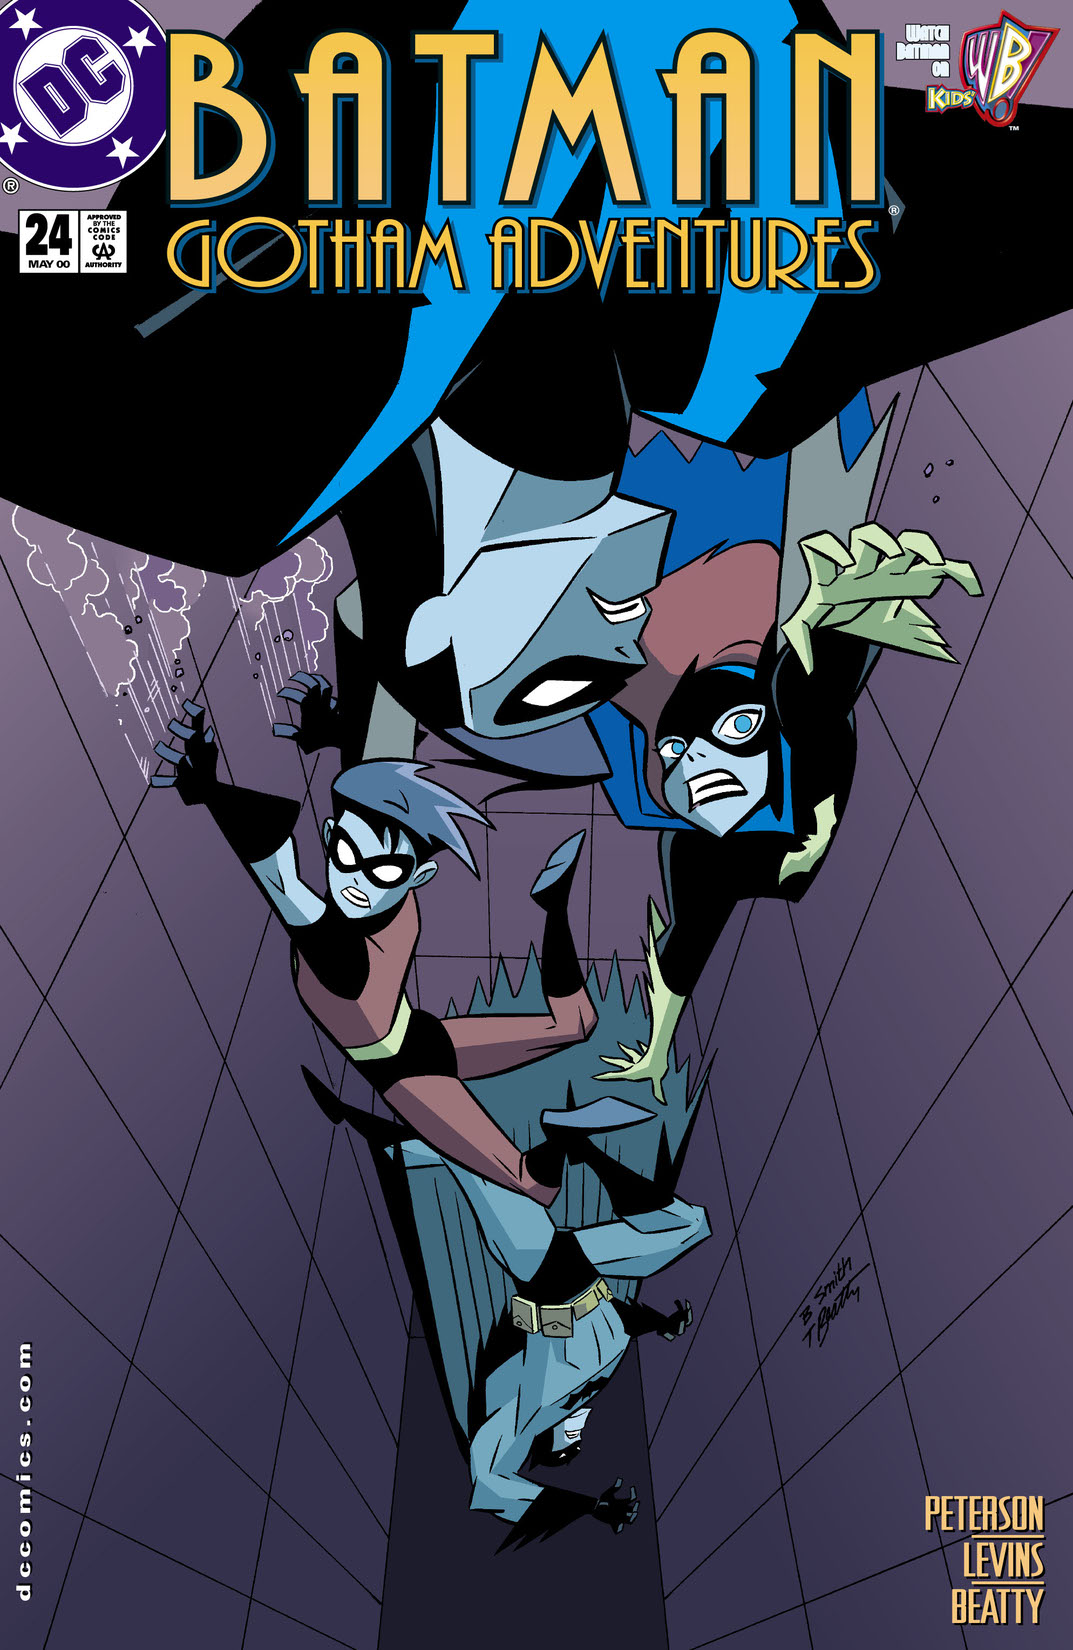 Batman: Gotham Adventures #24 preview images